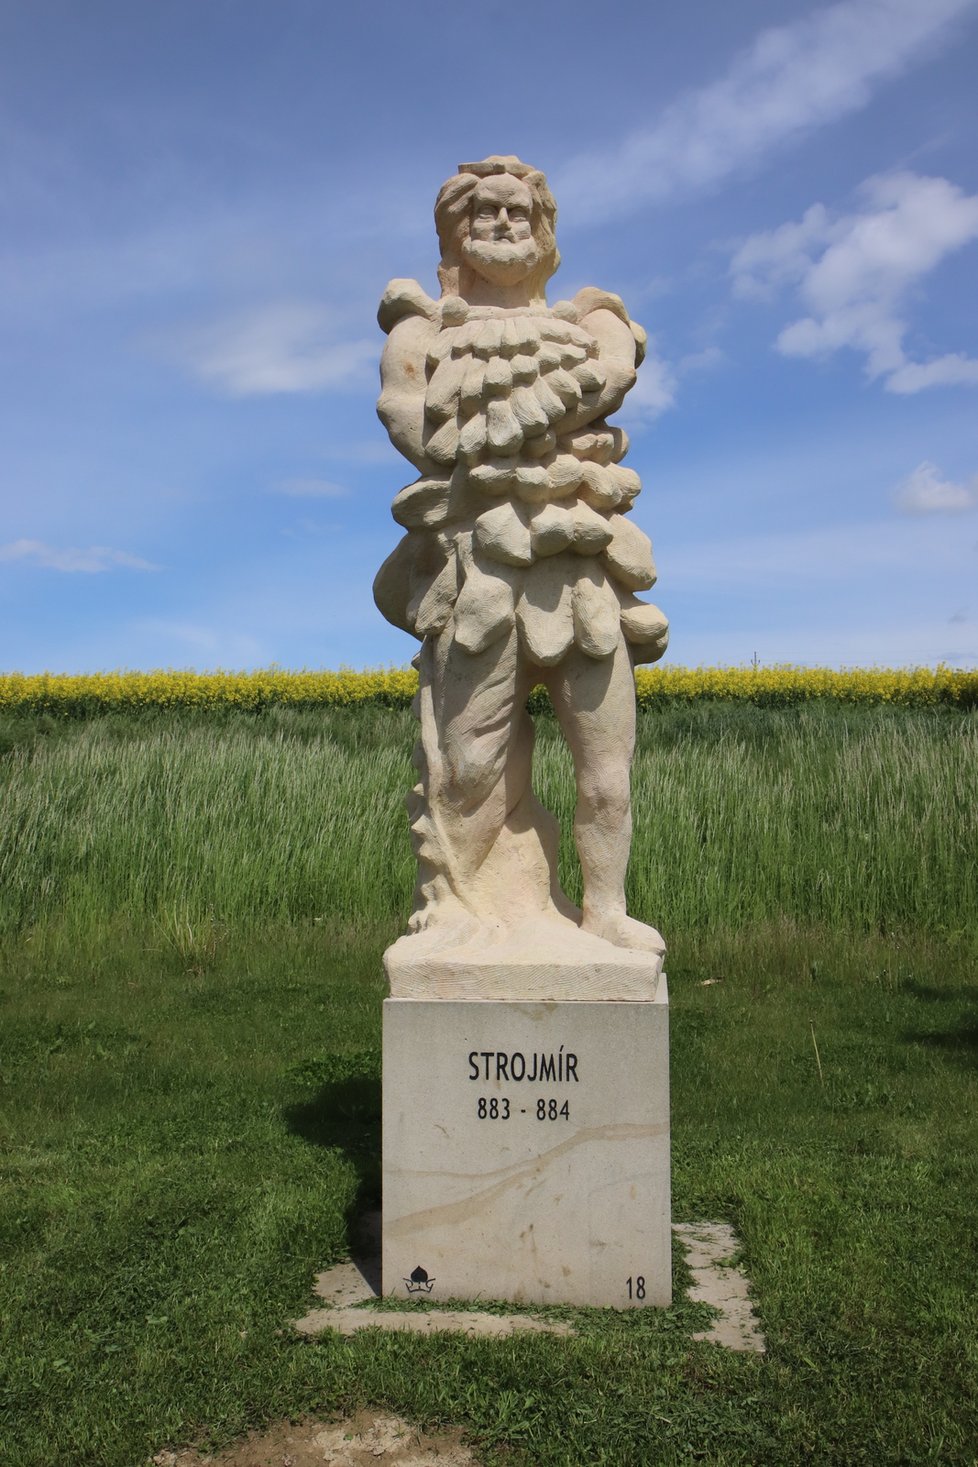 Socha zřejmě nejméně známé postavy českých dějin, Strojmíra.